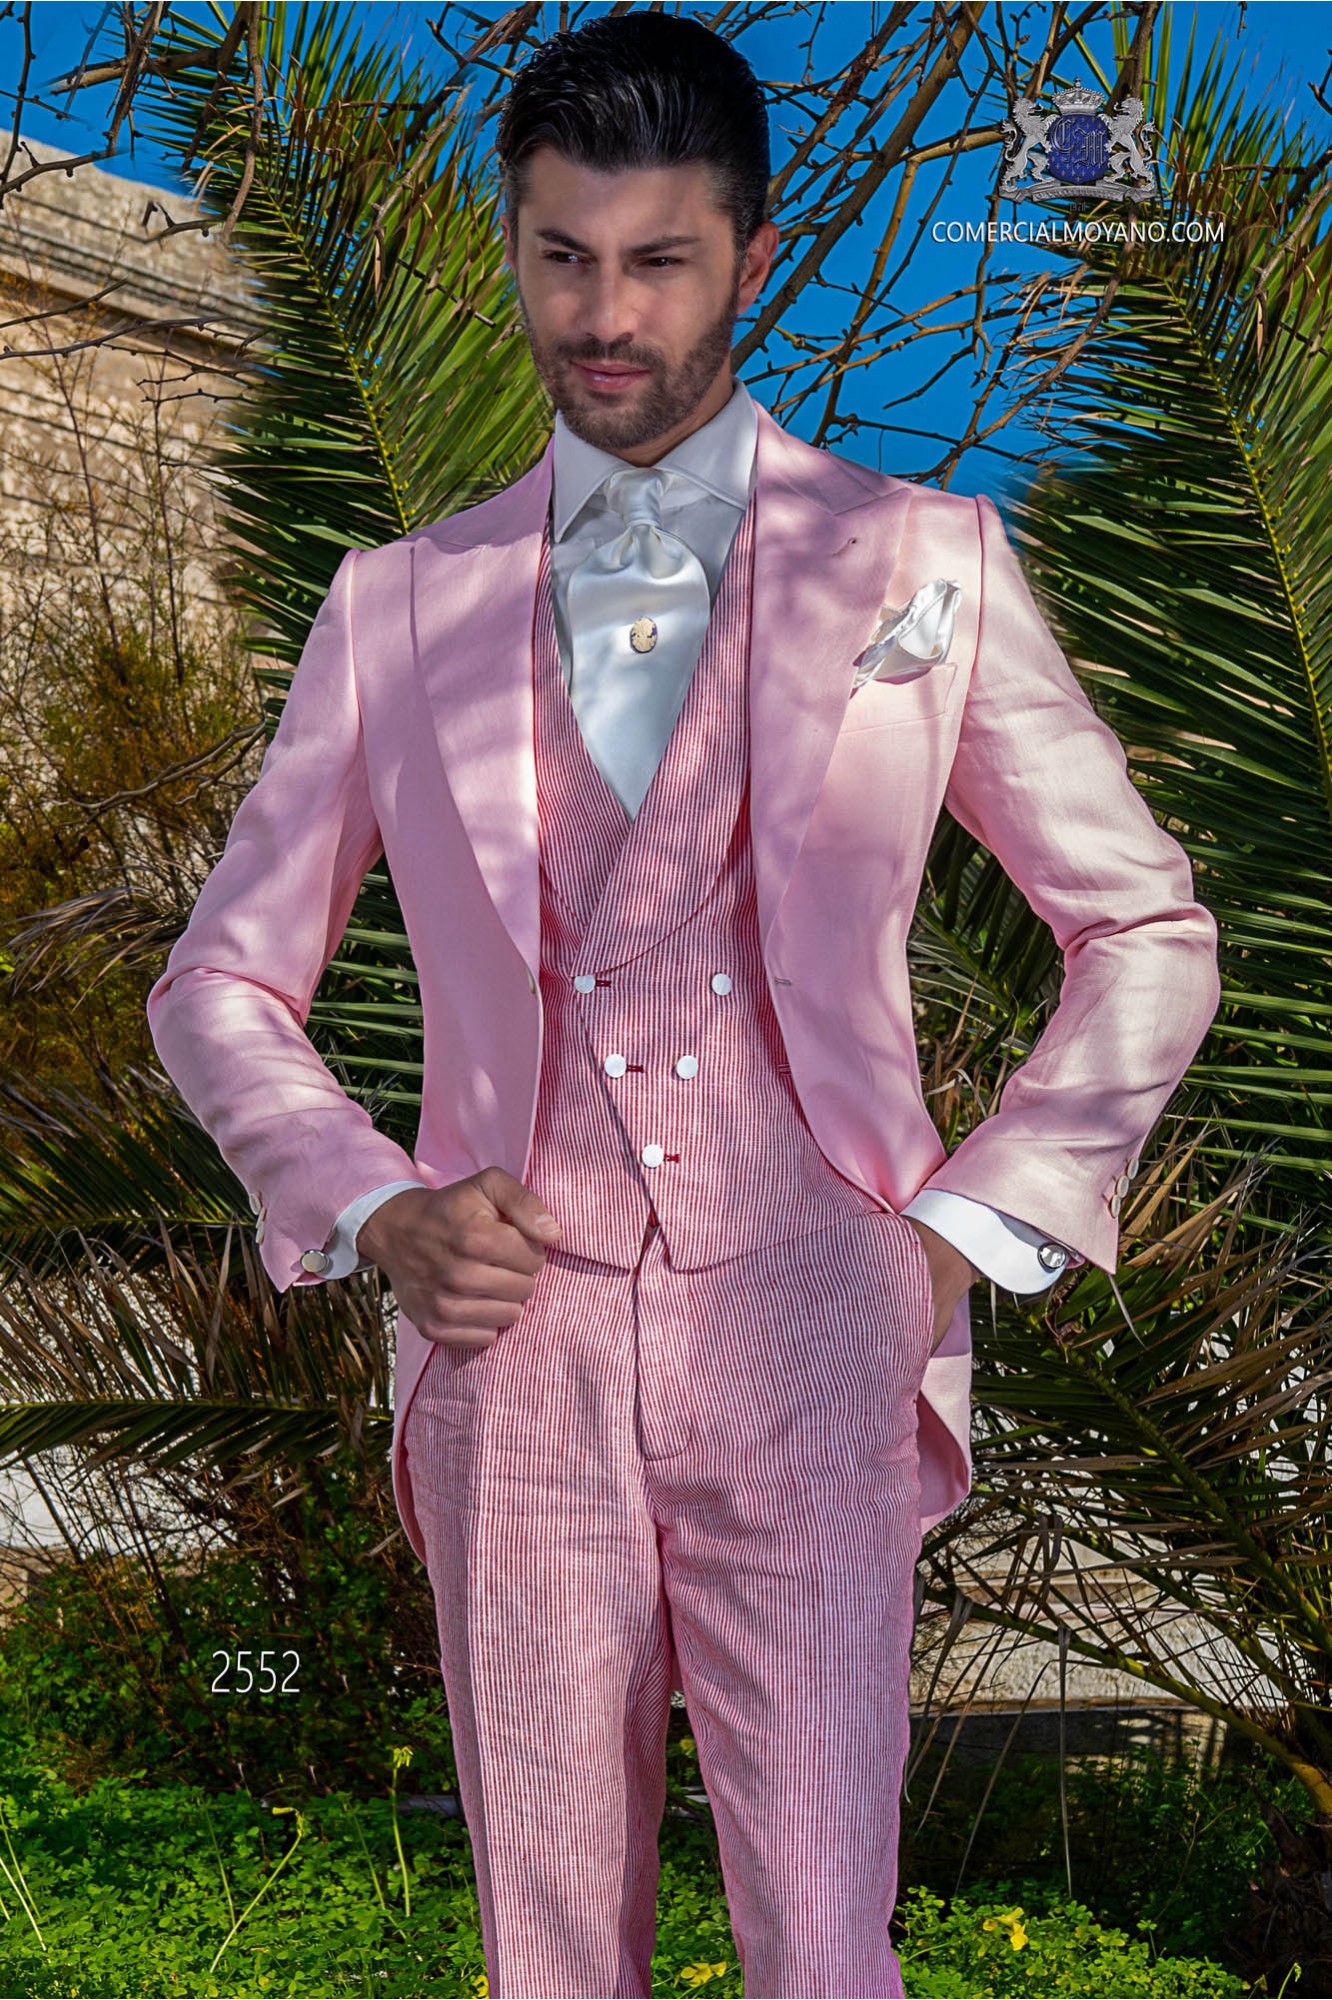 Chaqué - Levita de novio rosa en tejido de lino modelo: 2552 Mario Moyano colección Hipster